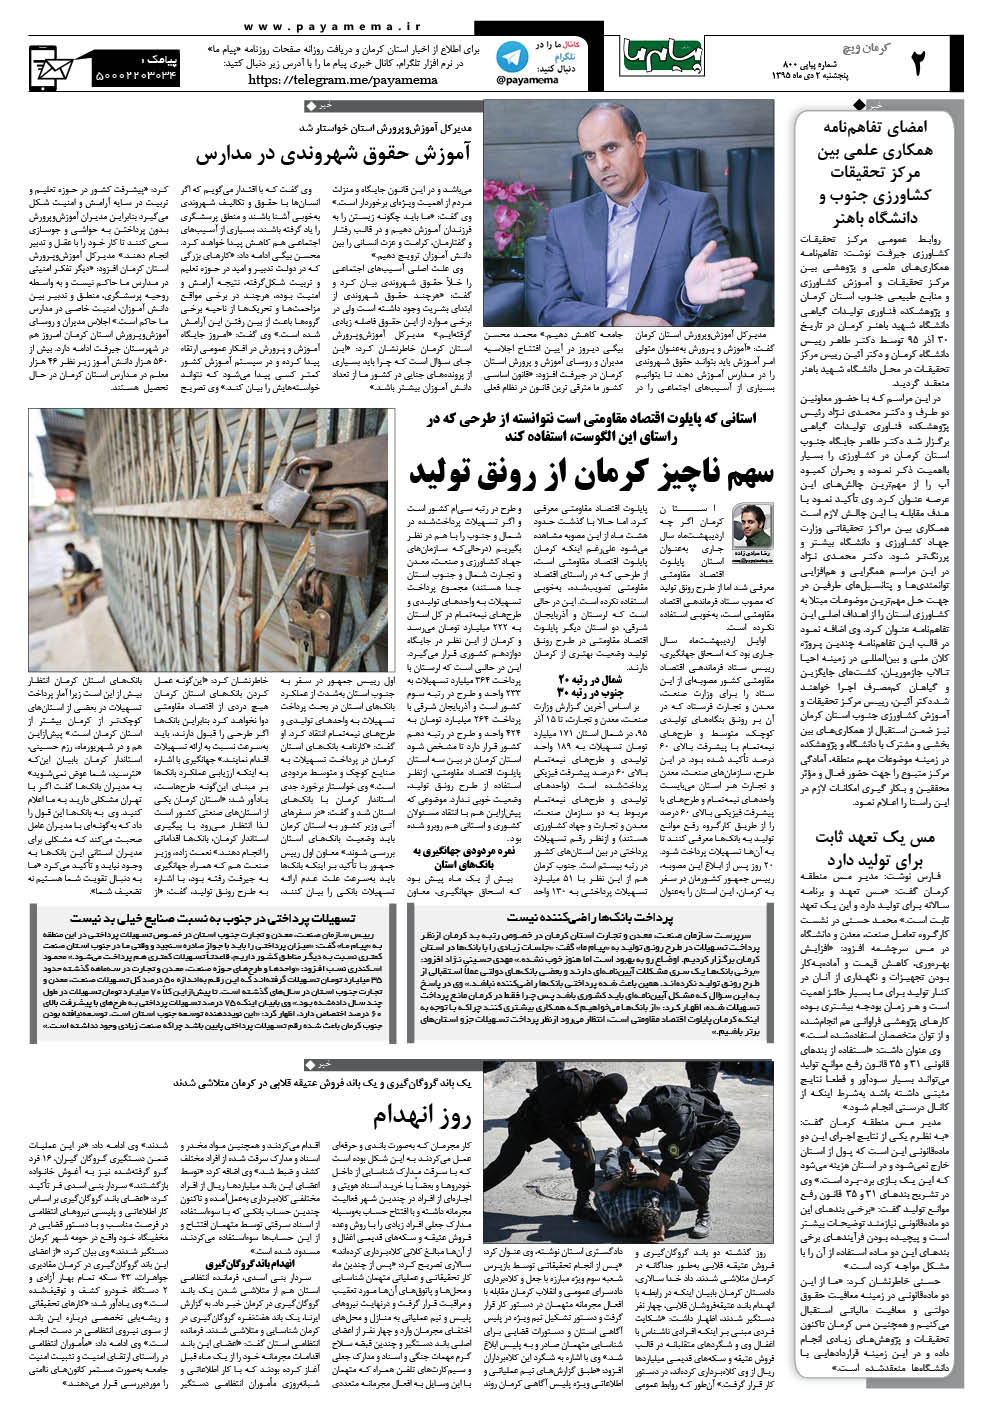 صفحه کرمان ویچ شماره 800 روزنامه پیام ما